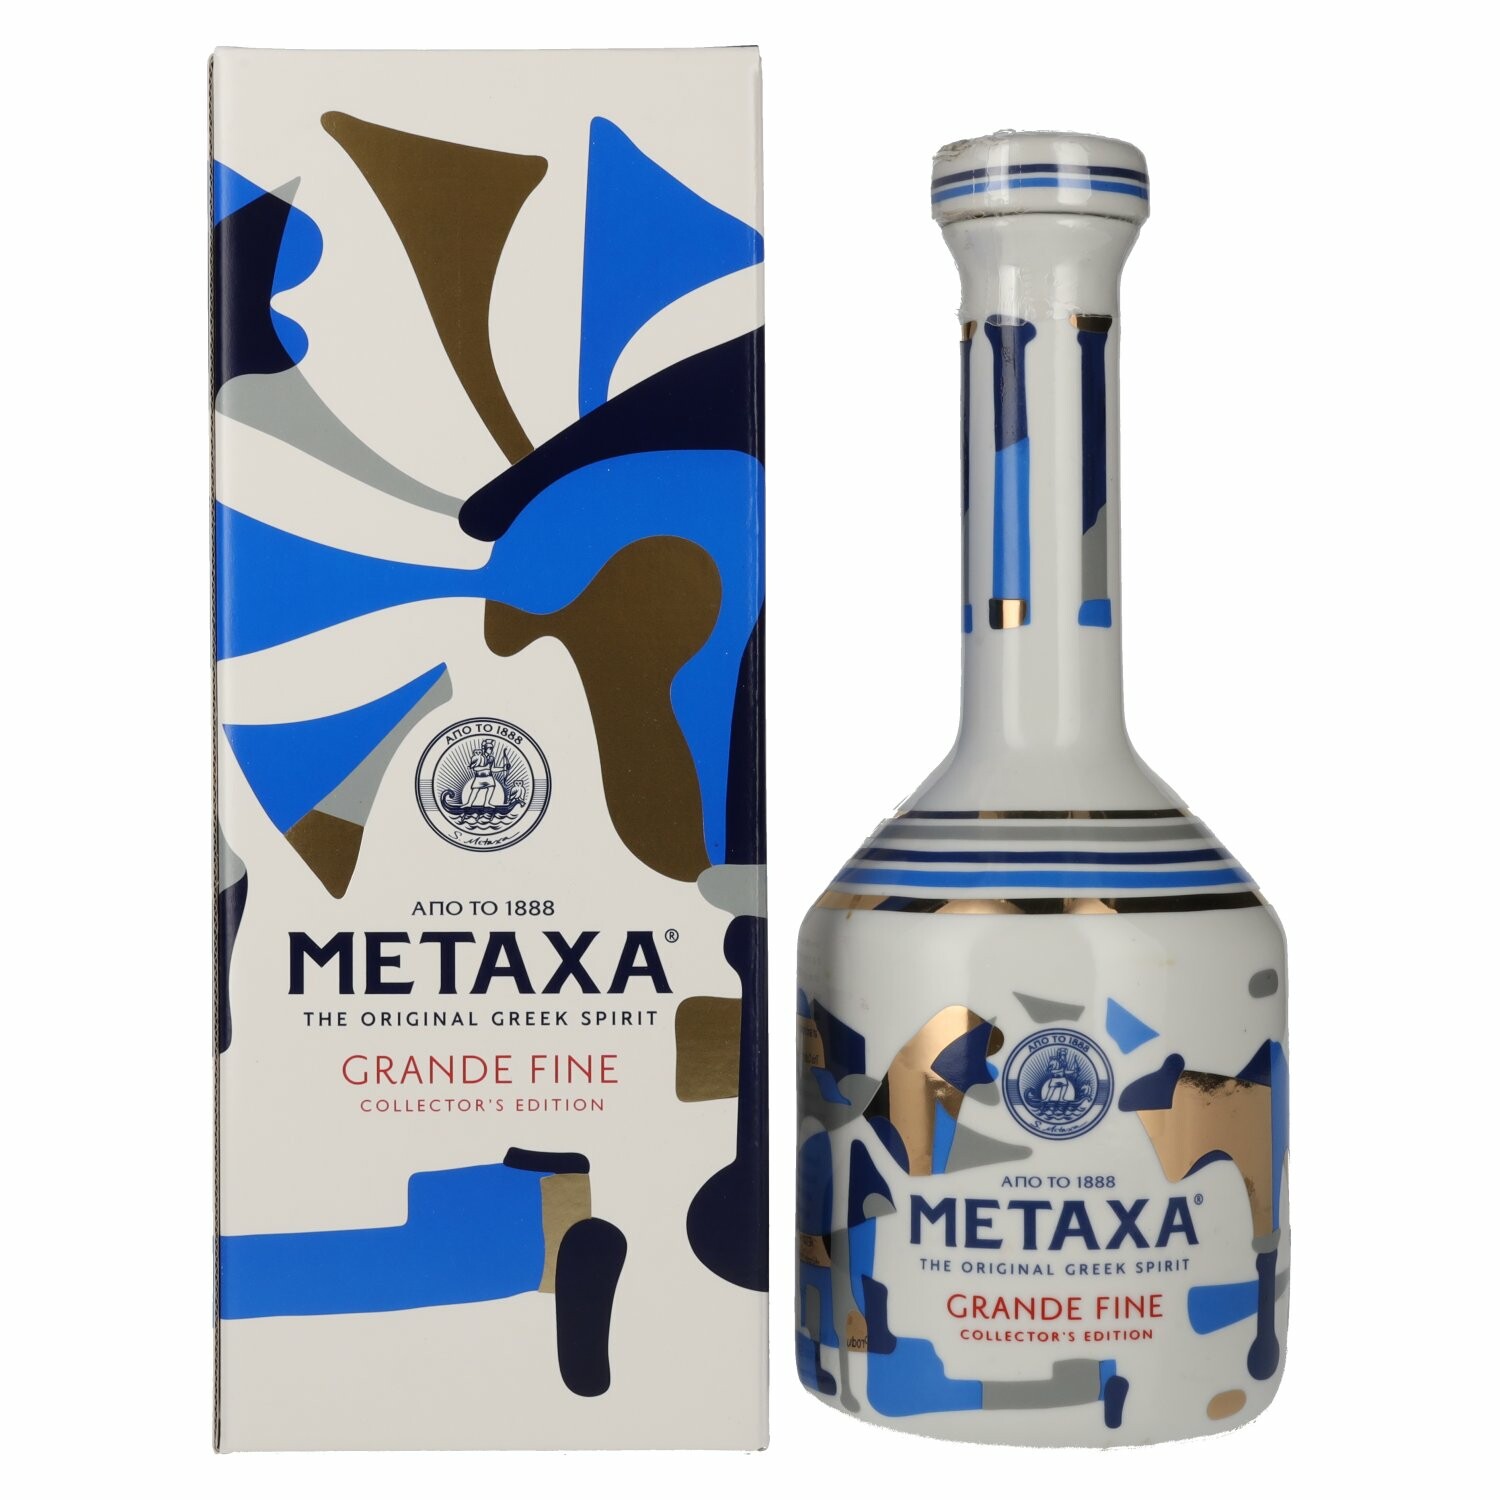 Metaxa GRANDE FINE Collector's Edition Keramikflasche 40% Vol. 0,7l in Giftbox